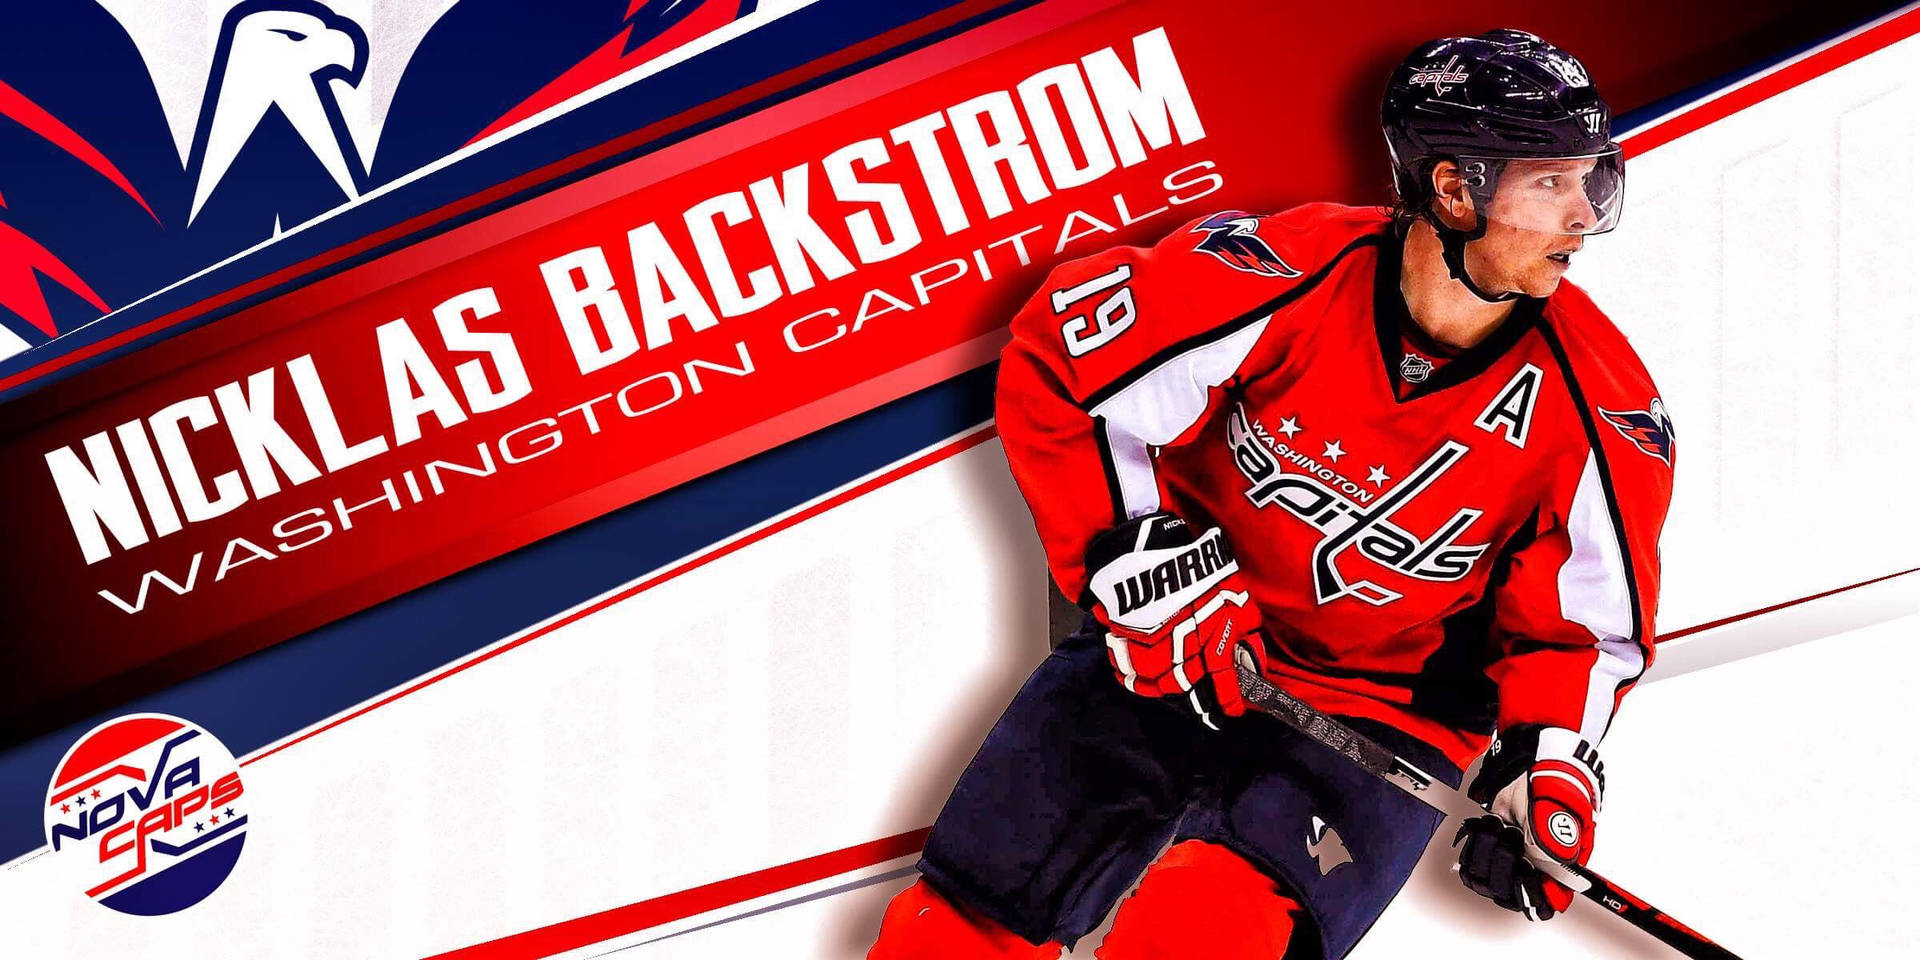 Svenskhockey-spelare Nicklas Backstrom Från Washington Capitals. Wallpaper